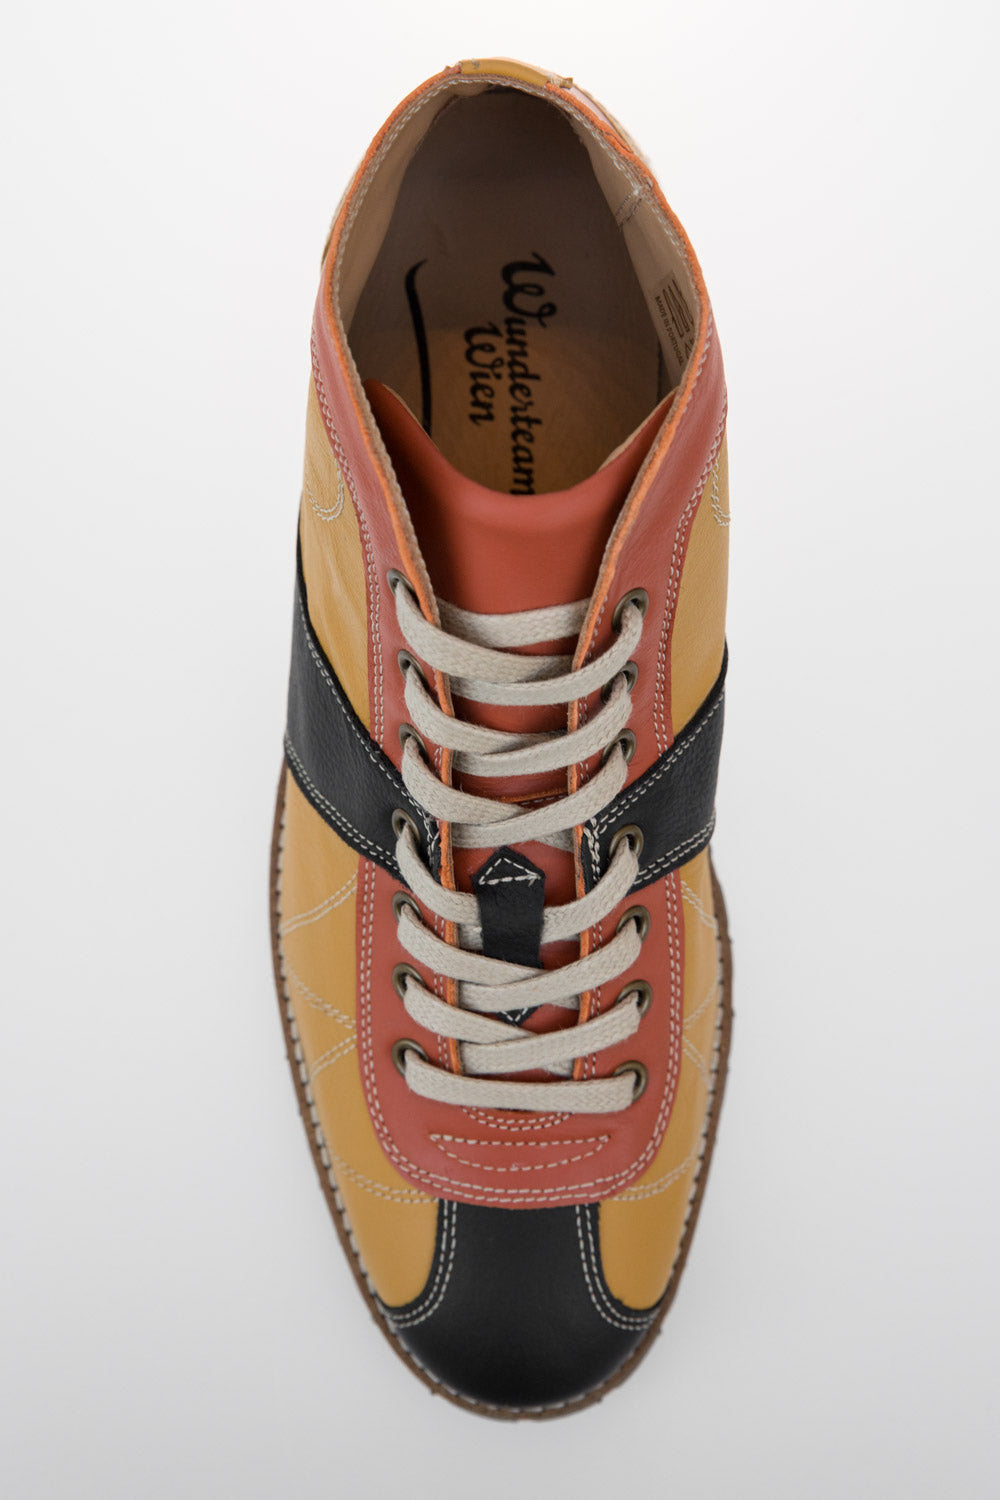 "The Kicker" Leder Retro Sneaker - senfgelb/orange/schwarz - Vibram®